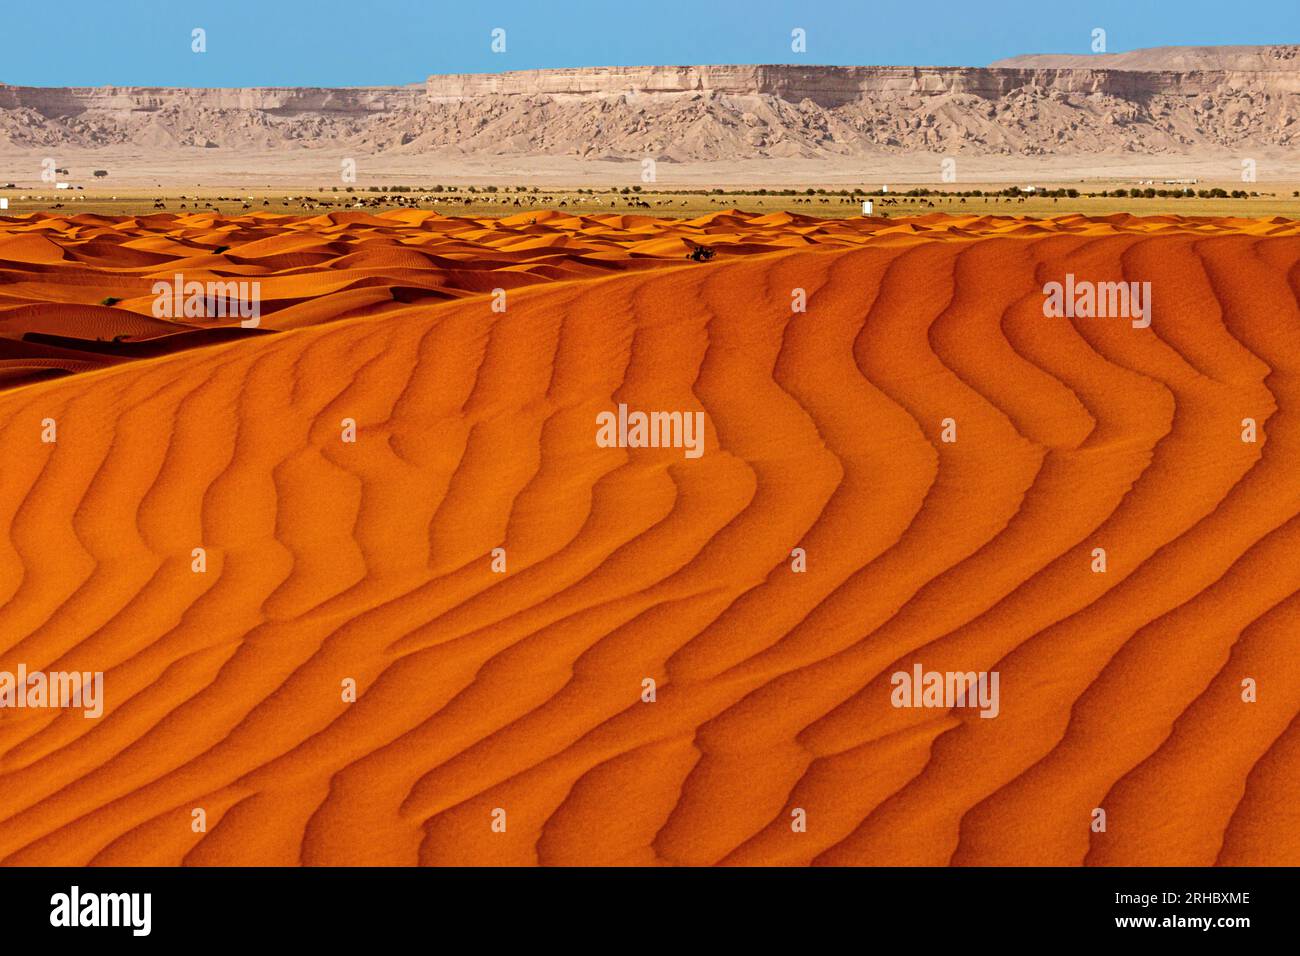 Orangefarbene Sanddünen in Wüstenlandschaft, Saudi-Arabien Stockfoto